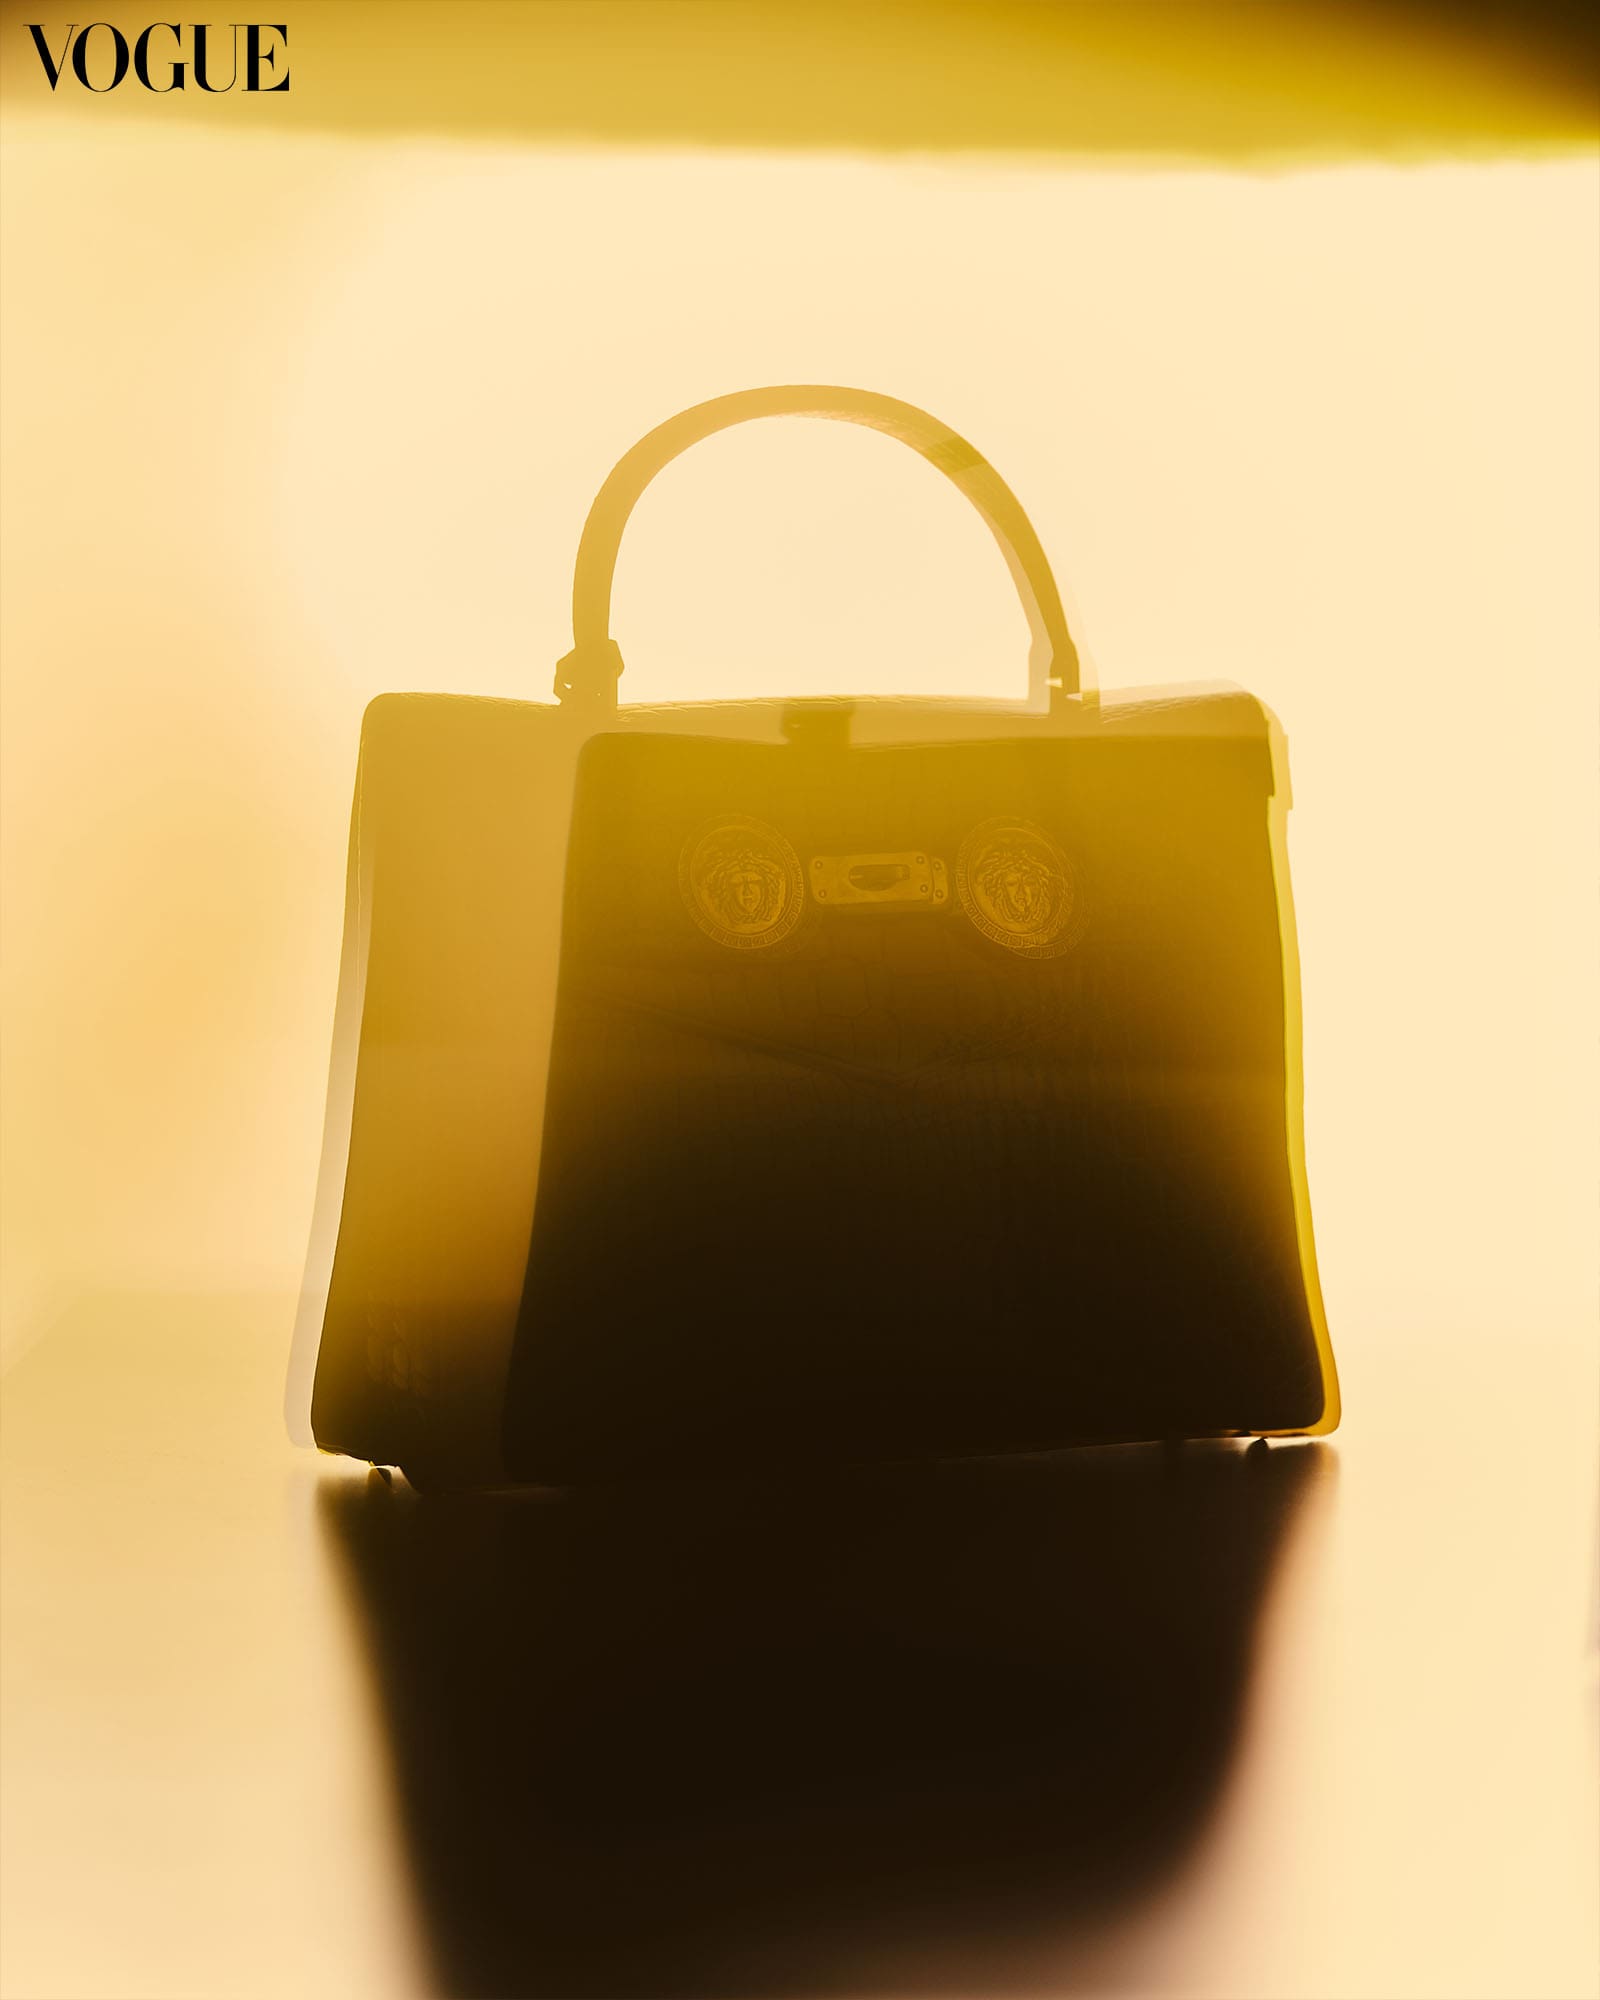 Silhouette of Heart Evangelista’s vintage Versace handbag.